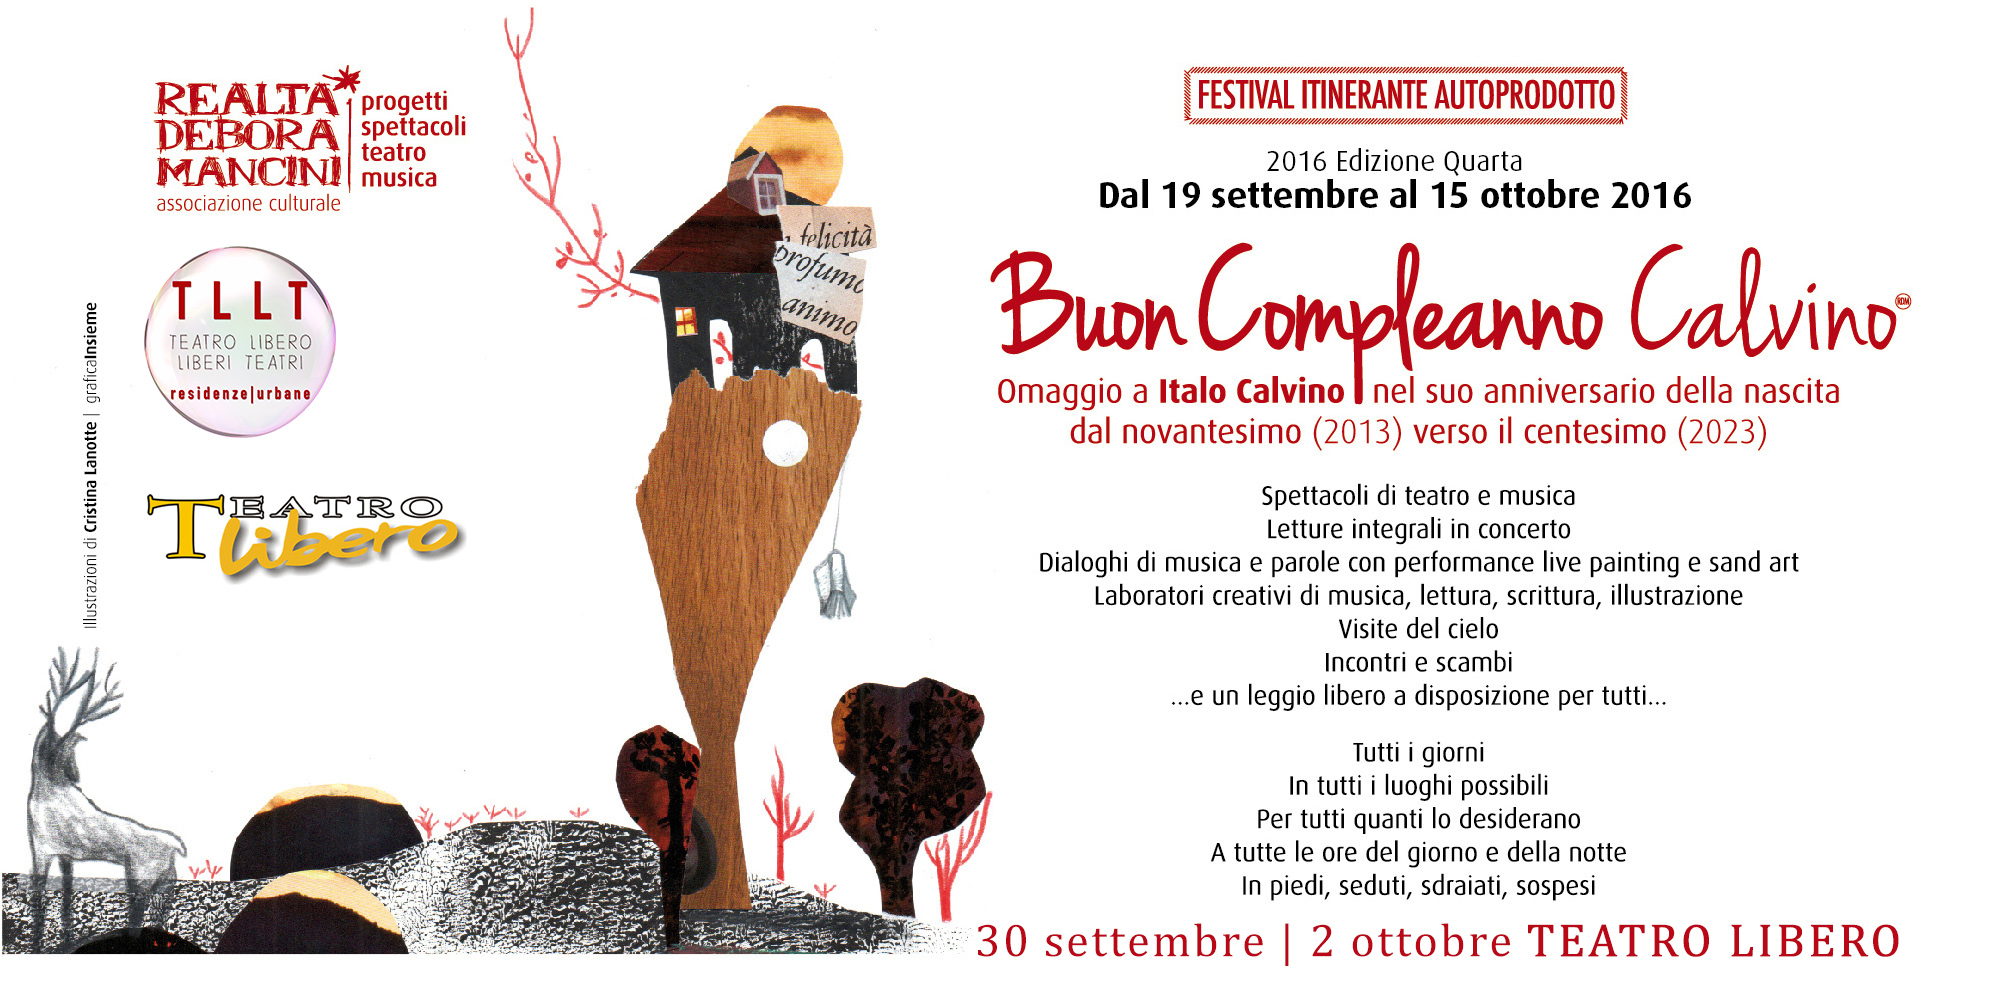 “Buon Compleanno Calvino”, dal 30 settembre al 2 ottobre al Teatro Libero di Milano